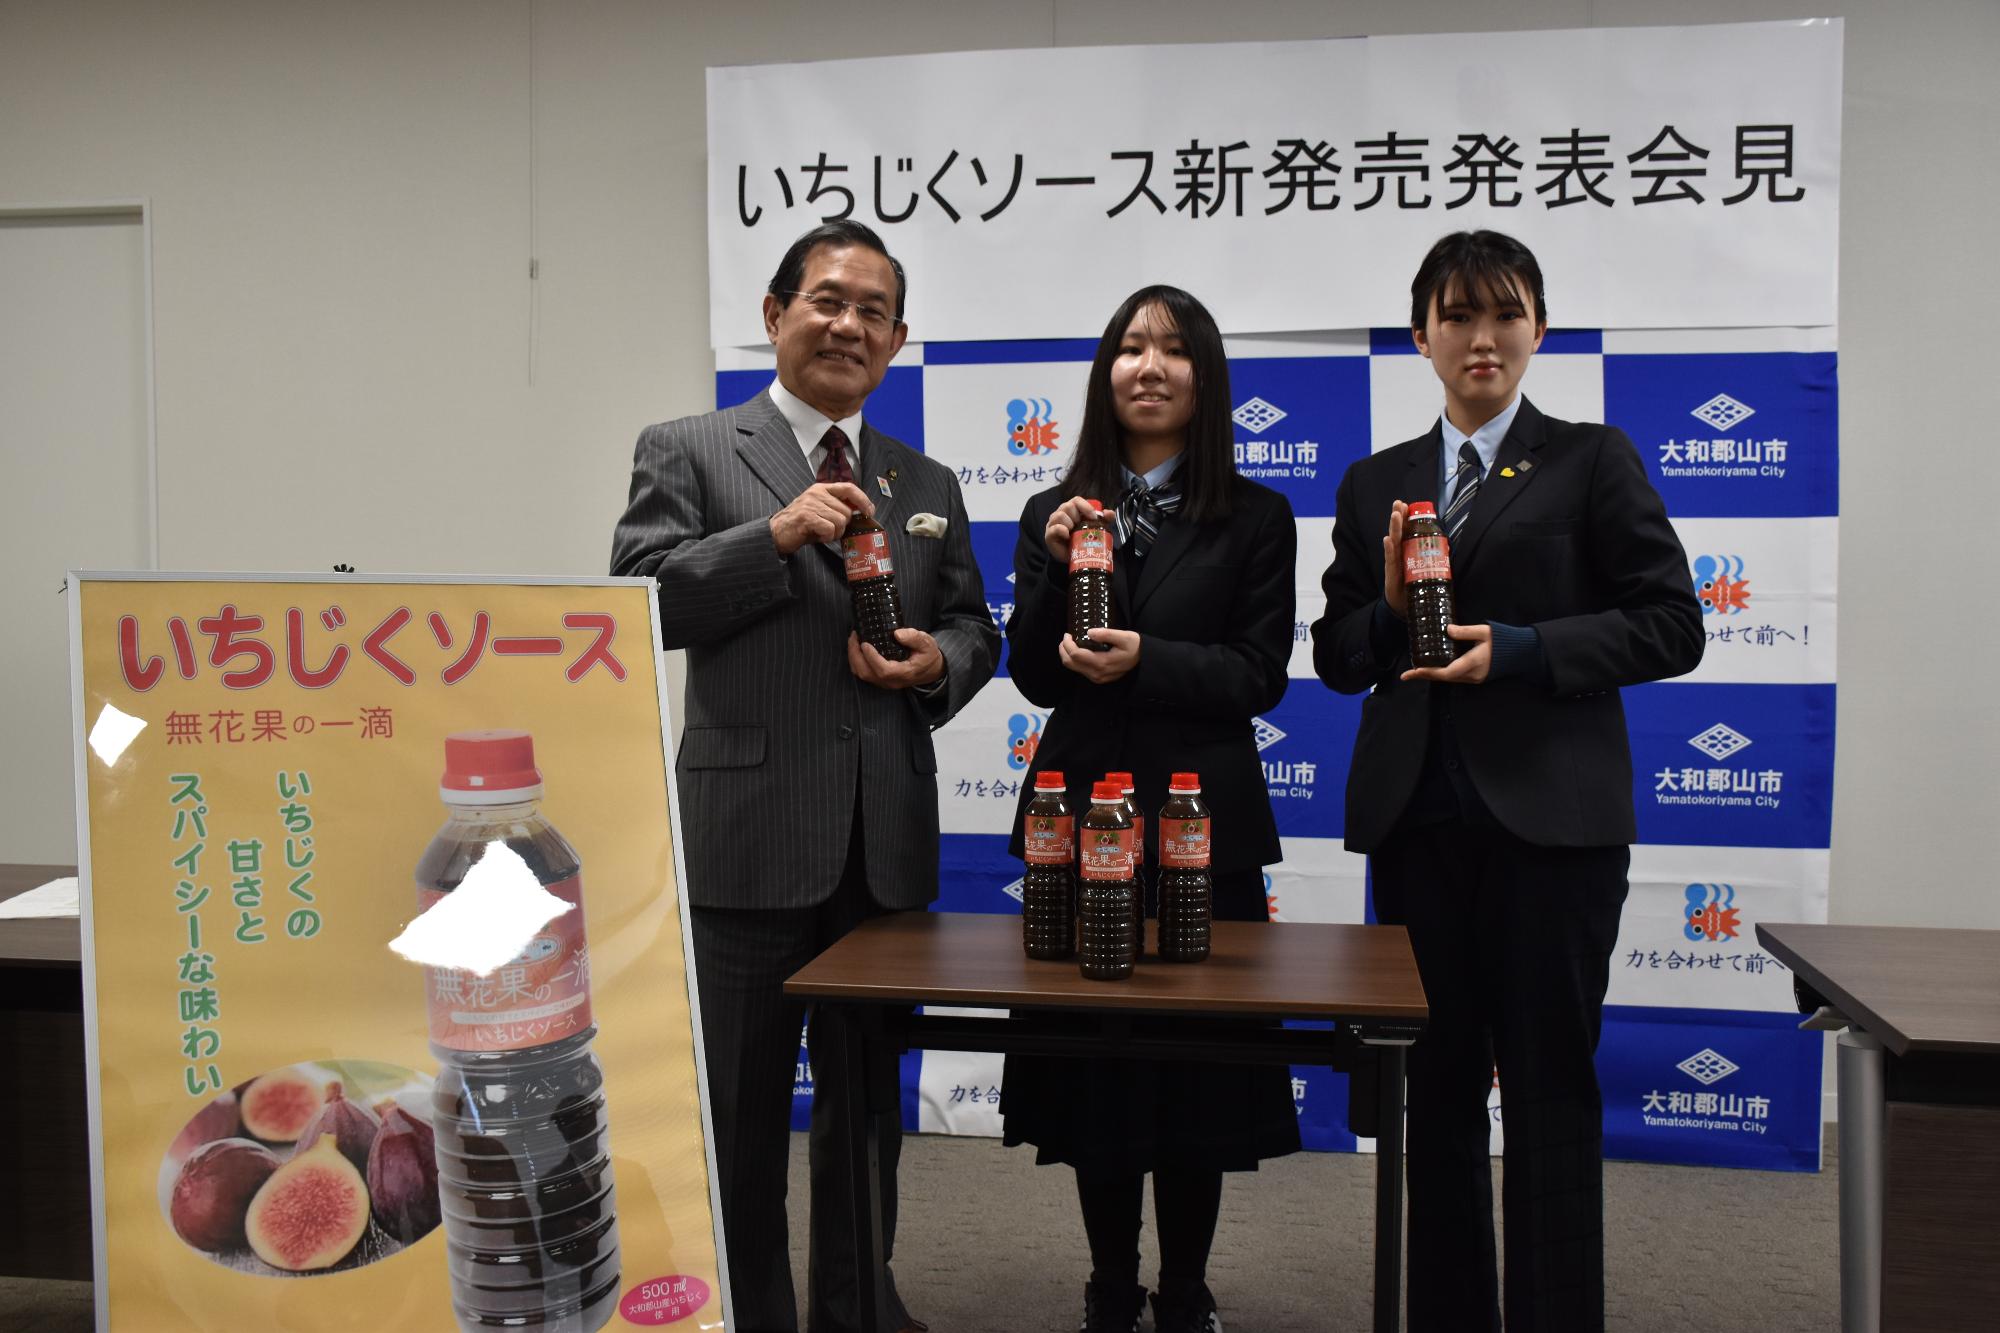 いちじくソースを手に持ち並ぶ上田市長と、紺色の制服を着た関西文化芸術高校の女子生徒2名